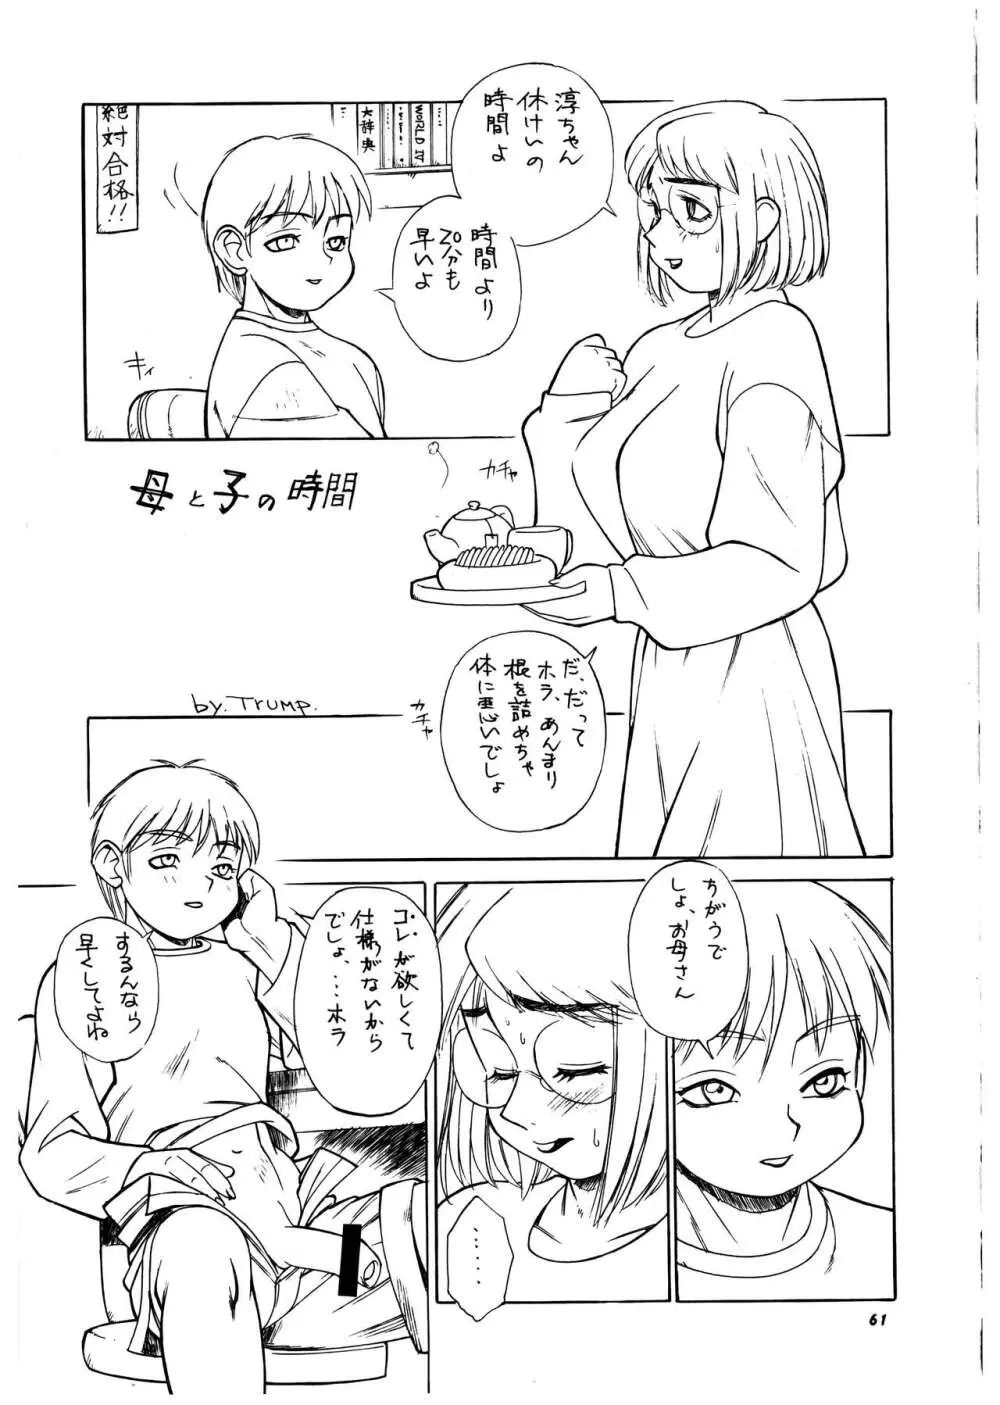 桃庵 vol.3 - page61